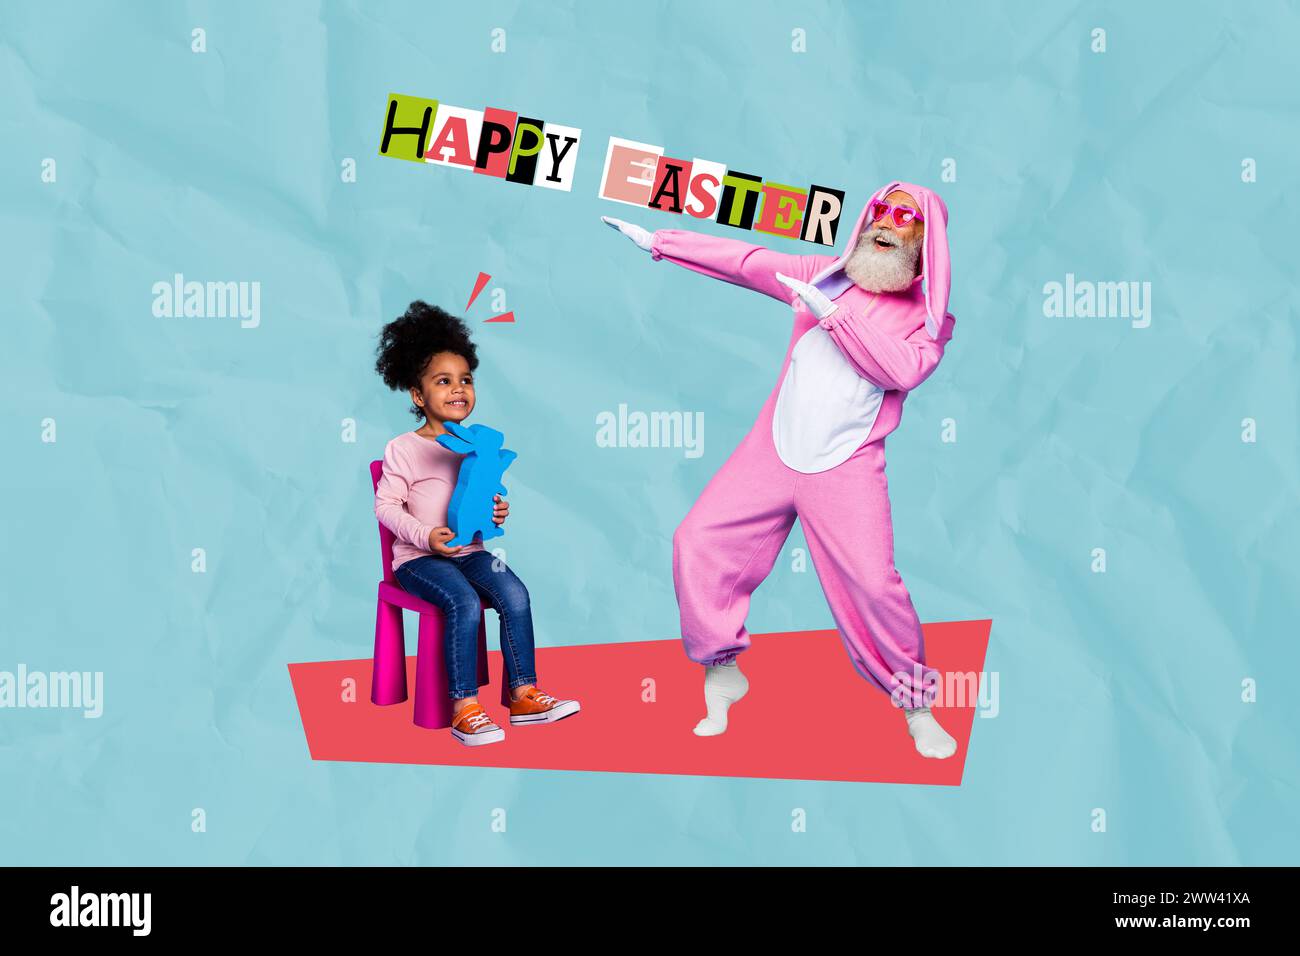 Collage 3D-Bild Retro-Skizze des süßen alten Mannes Kaninchen spielen Kind feiern ostereinladung Postkarte bizarr ungewöhnliche Fantasy-Plakatwand Stockfoto